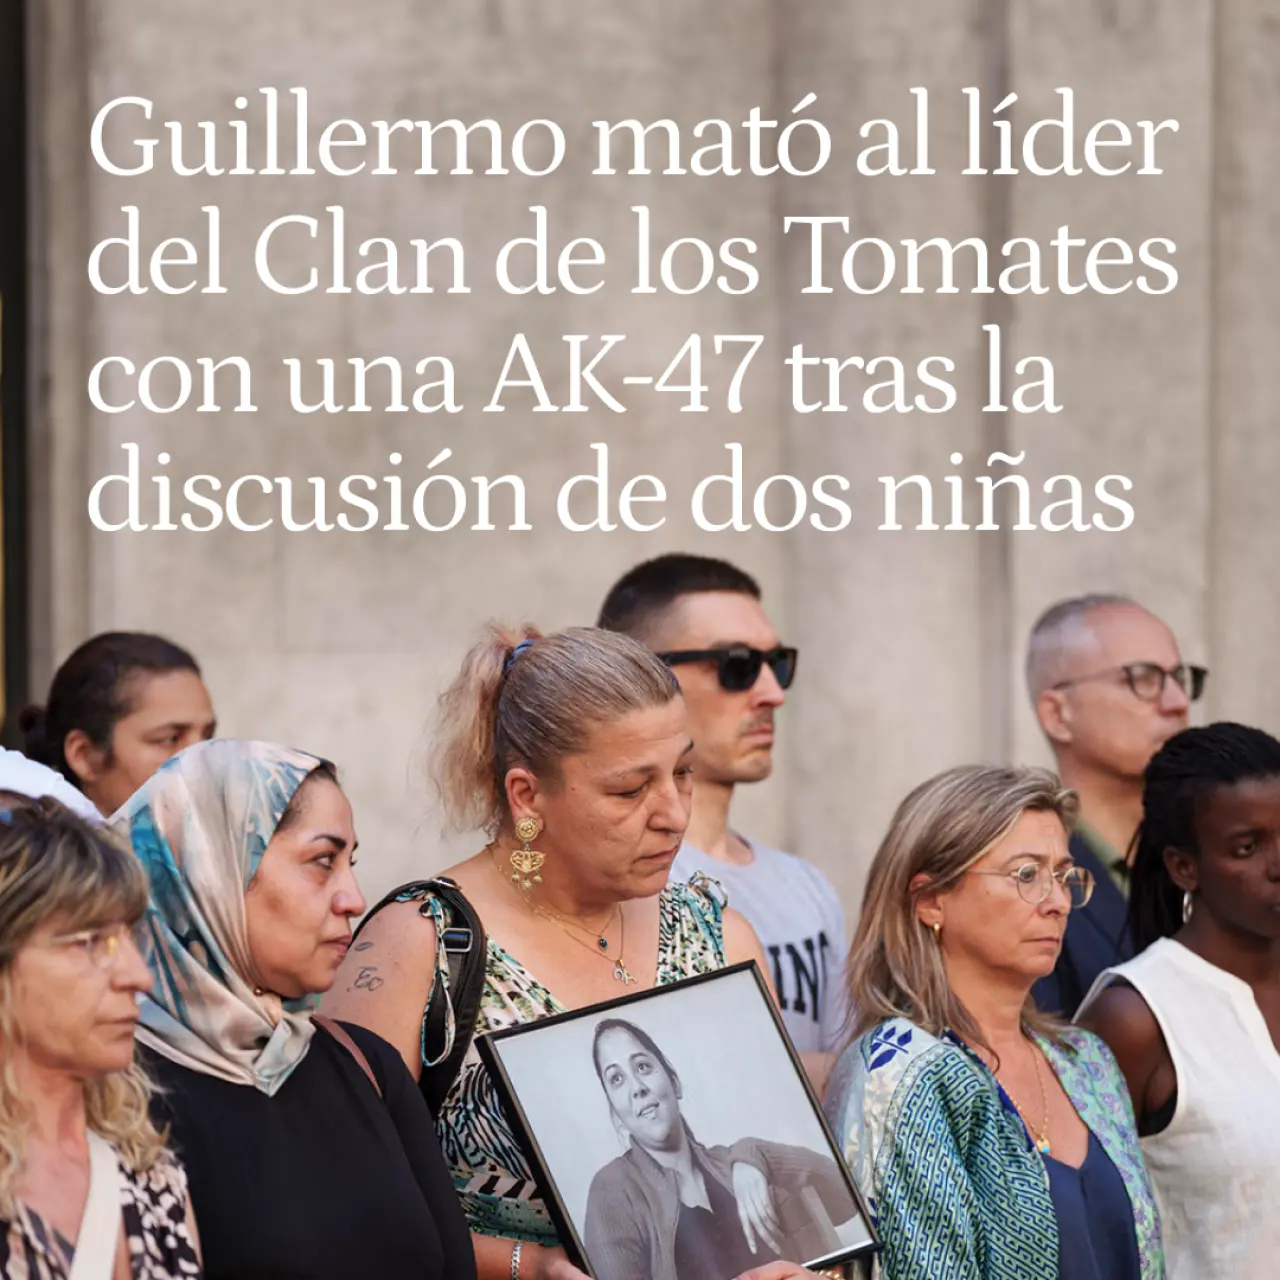 Guillermo mató al líder del Clan de los Tomates con una AK-47 tras la discusión de dos niñas en Gerona